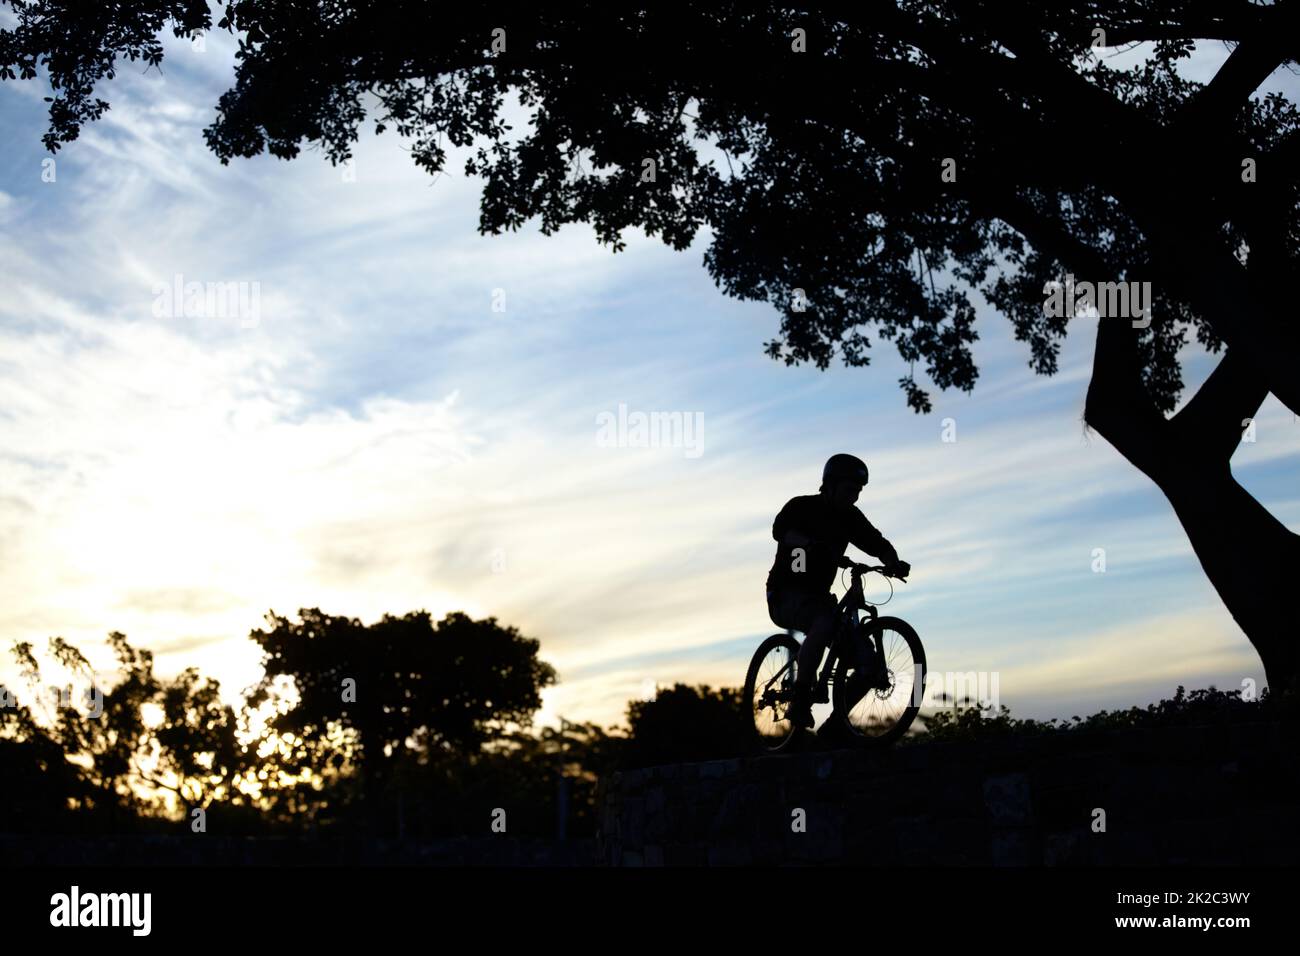 Roulez Silhouette d'un homme qui a fait son vélo au crépuscule. Banque D'Images